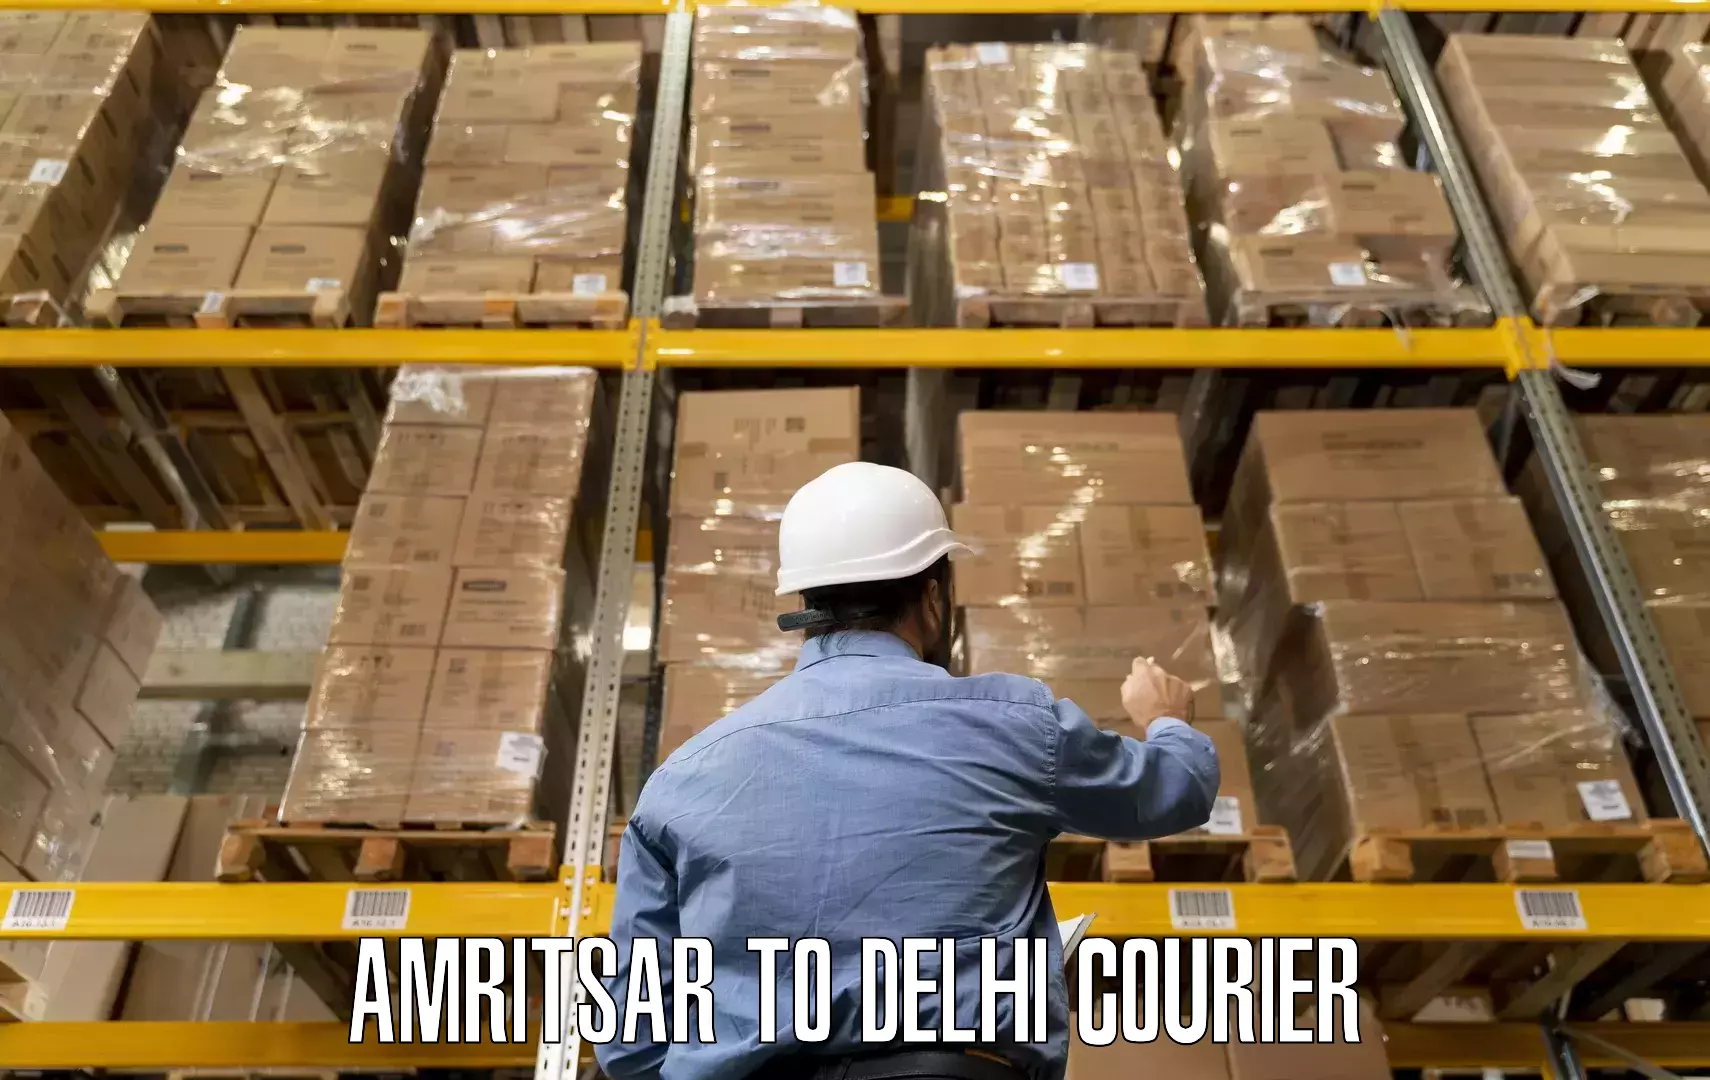 Household goods transport service Amritsar to Ashok Vihar